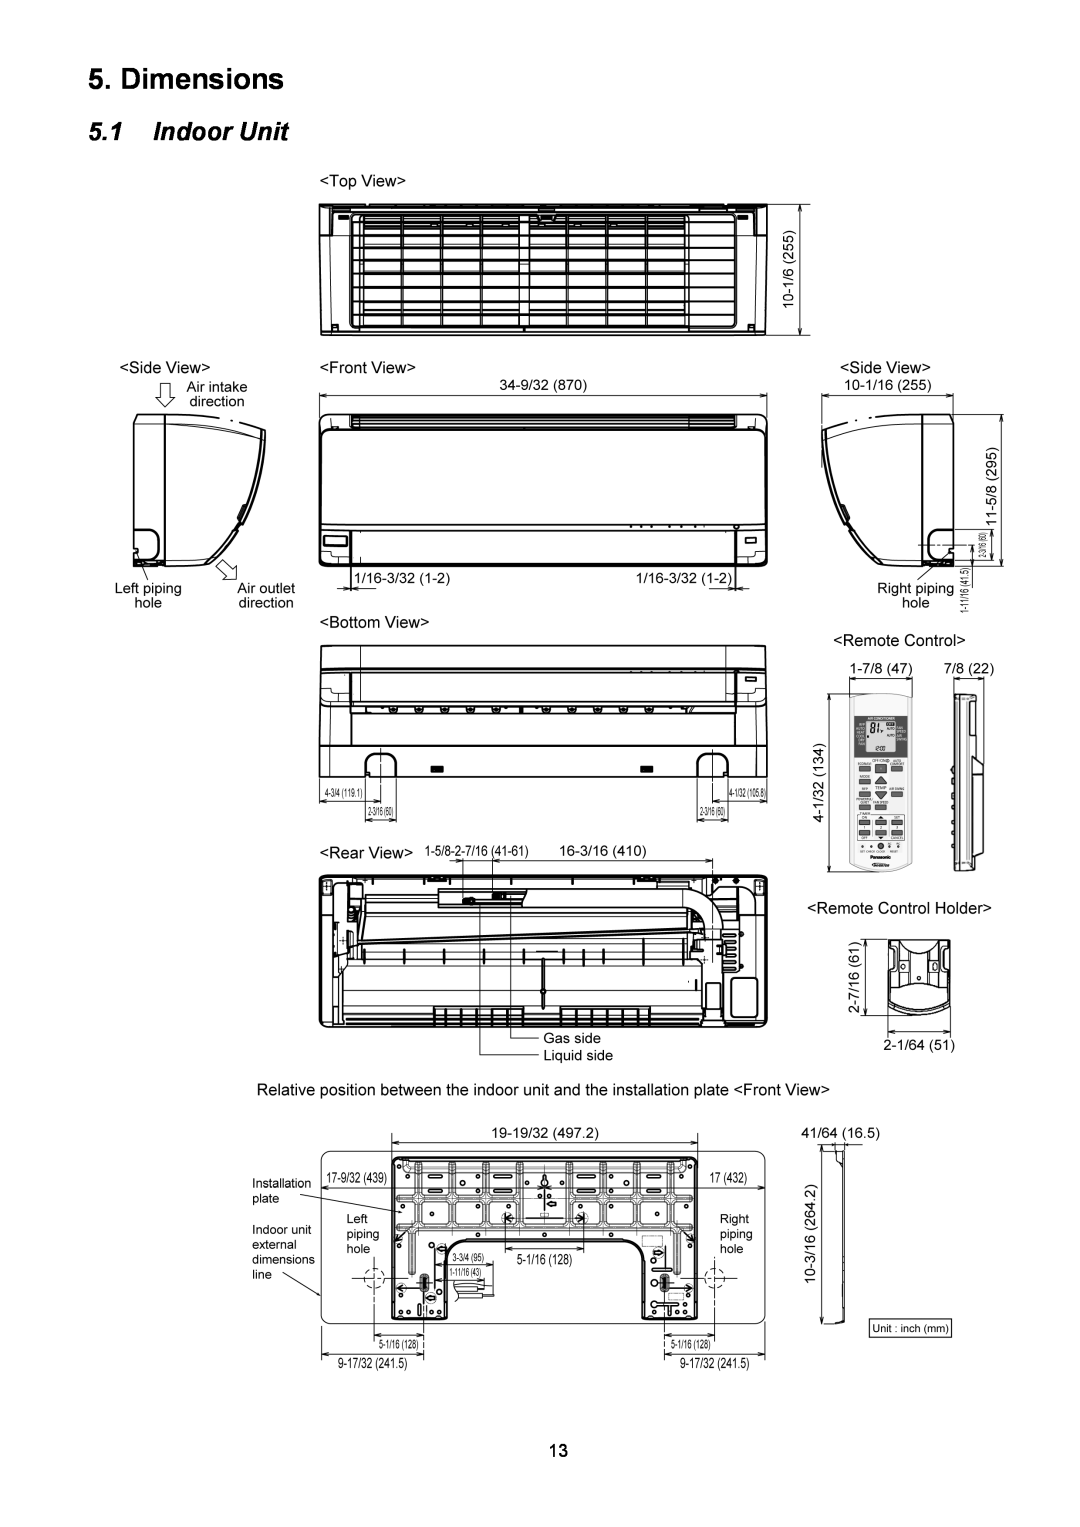 Panasonic CS-XE9PKUA, CS-XE12PKUA, CU-XE9PKUA, CU-XE12PKUA manual Dimensions, 5.1Indoor Unit 